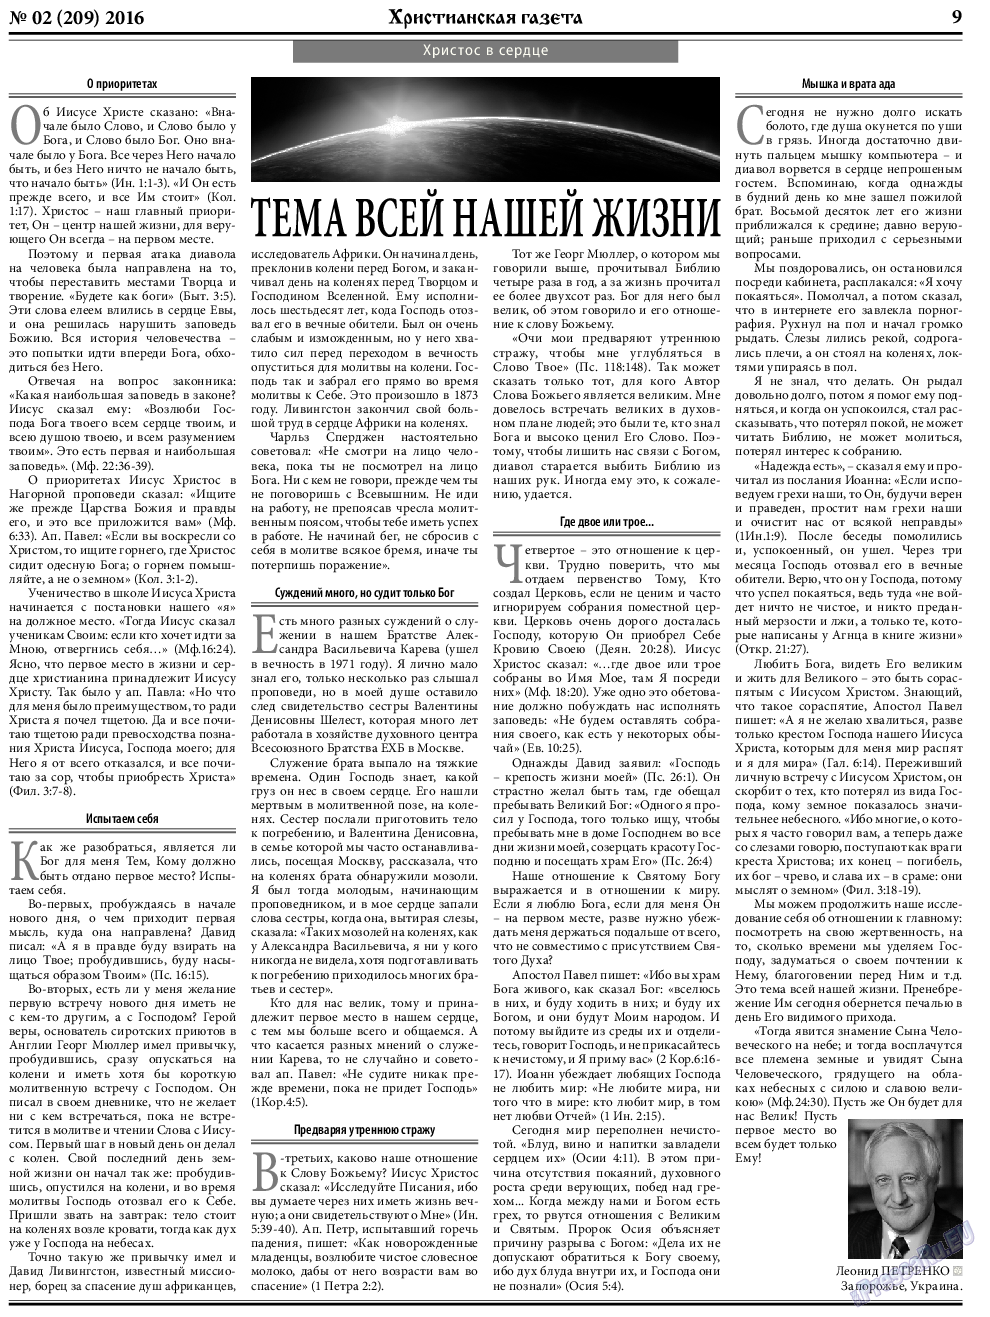 Христианская газета, газета. 2016 №2 стр.9